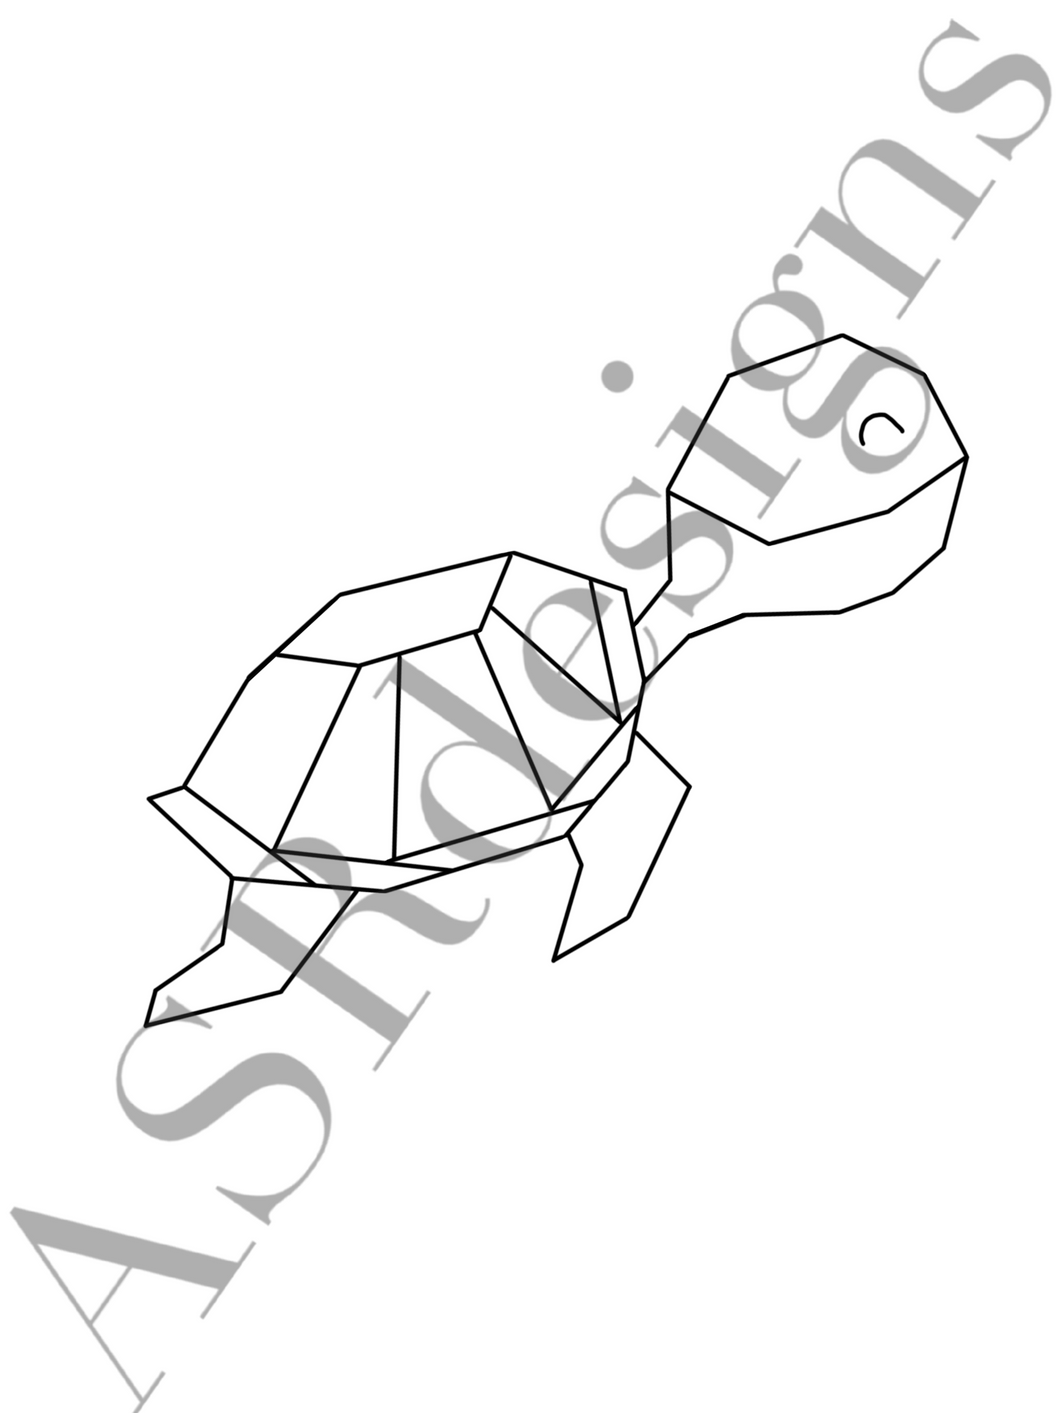 Lieve en hippe poster voor babykamer of kinderkamer van een (geometrische) schildpadje in zwart wit